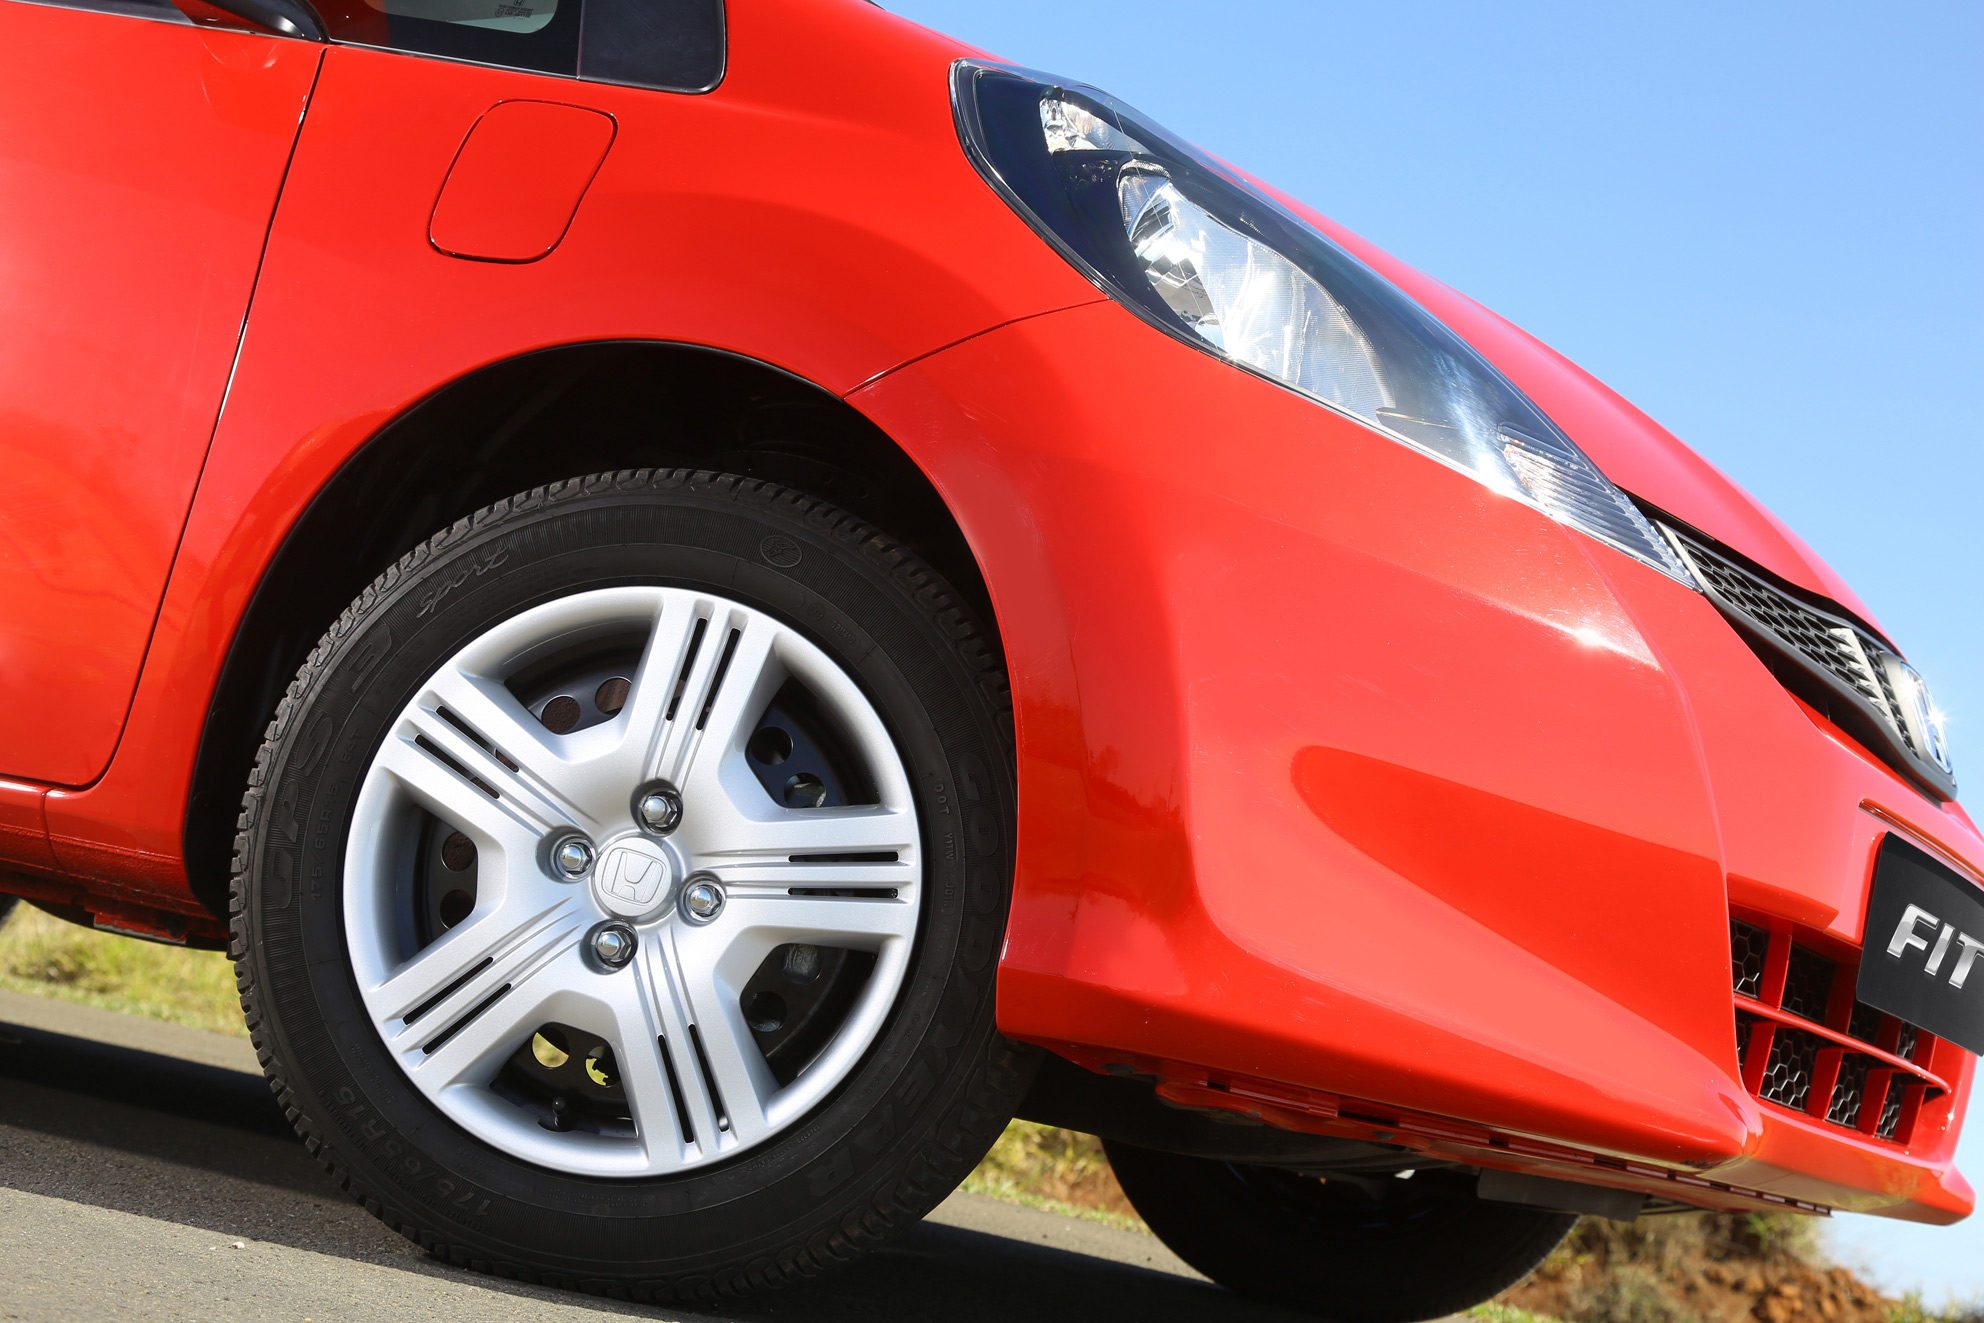 honda fit cx 1 4 2014 vermelho rally frente detalhe roda de aco com calota paralama tanquinho partida a frio